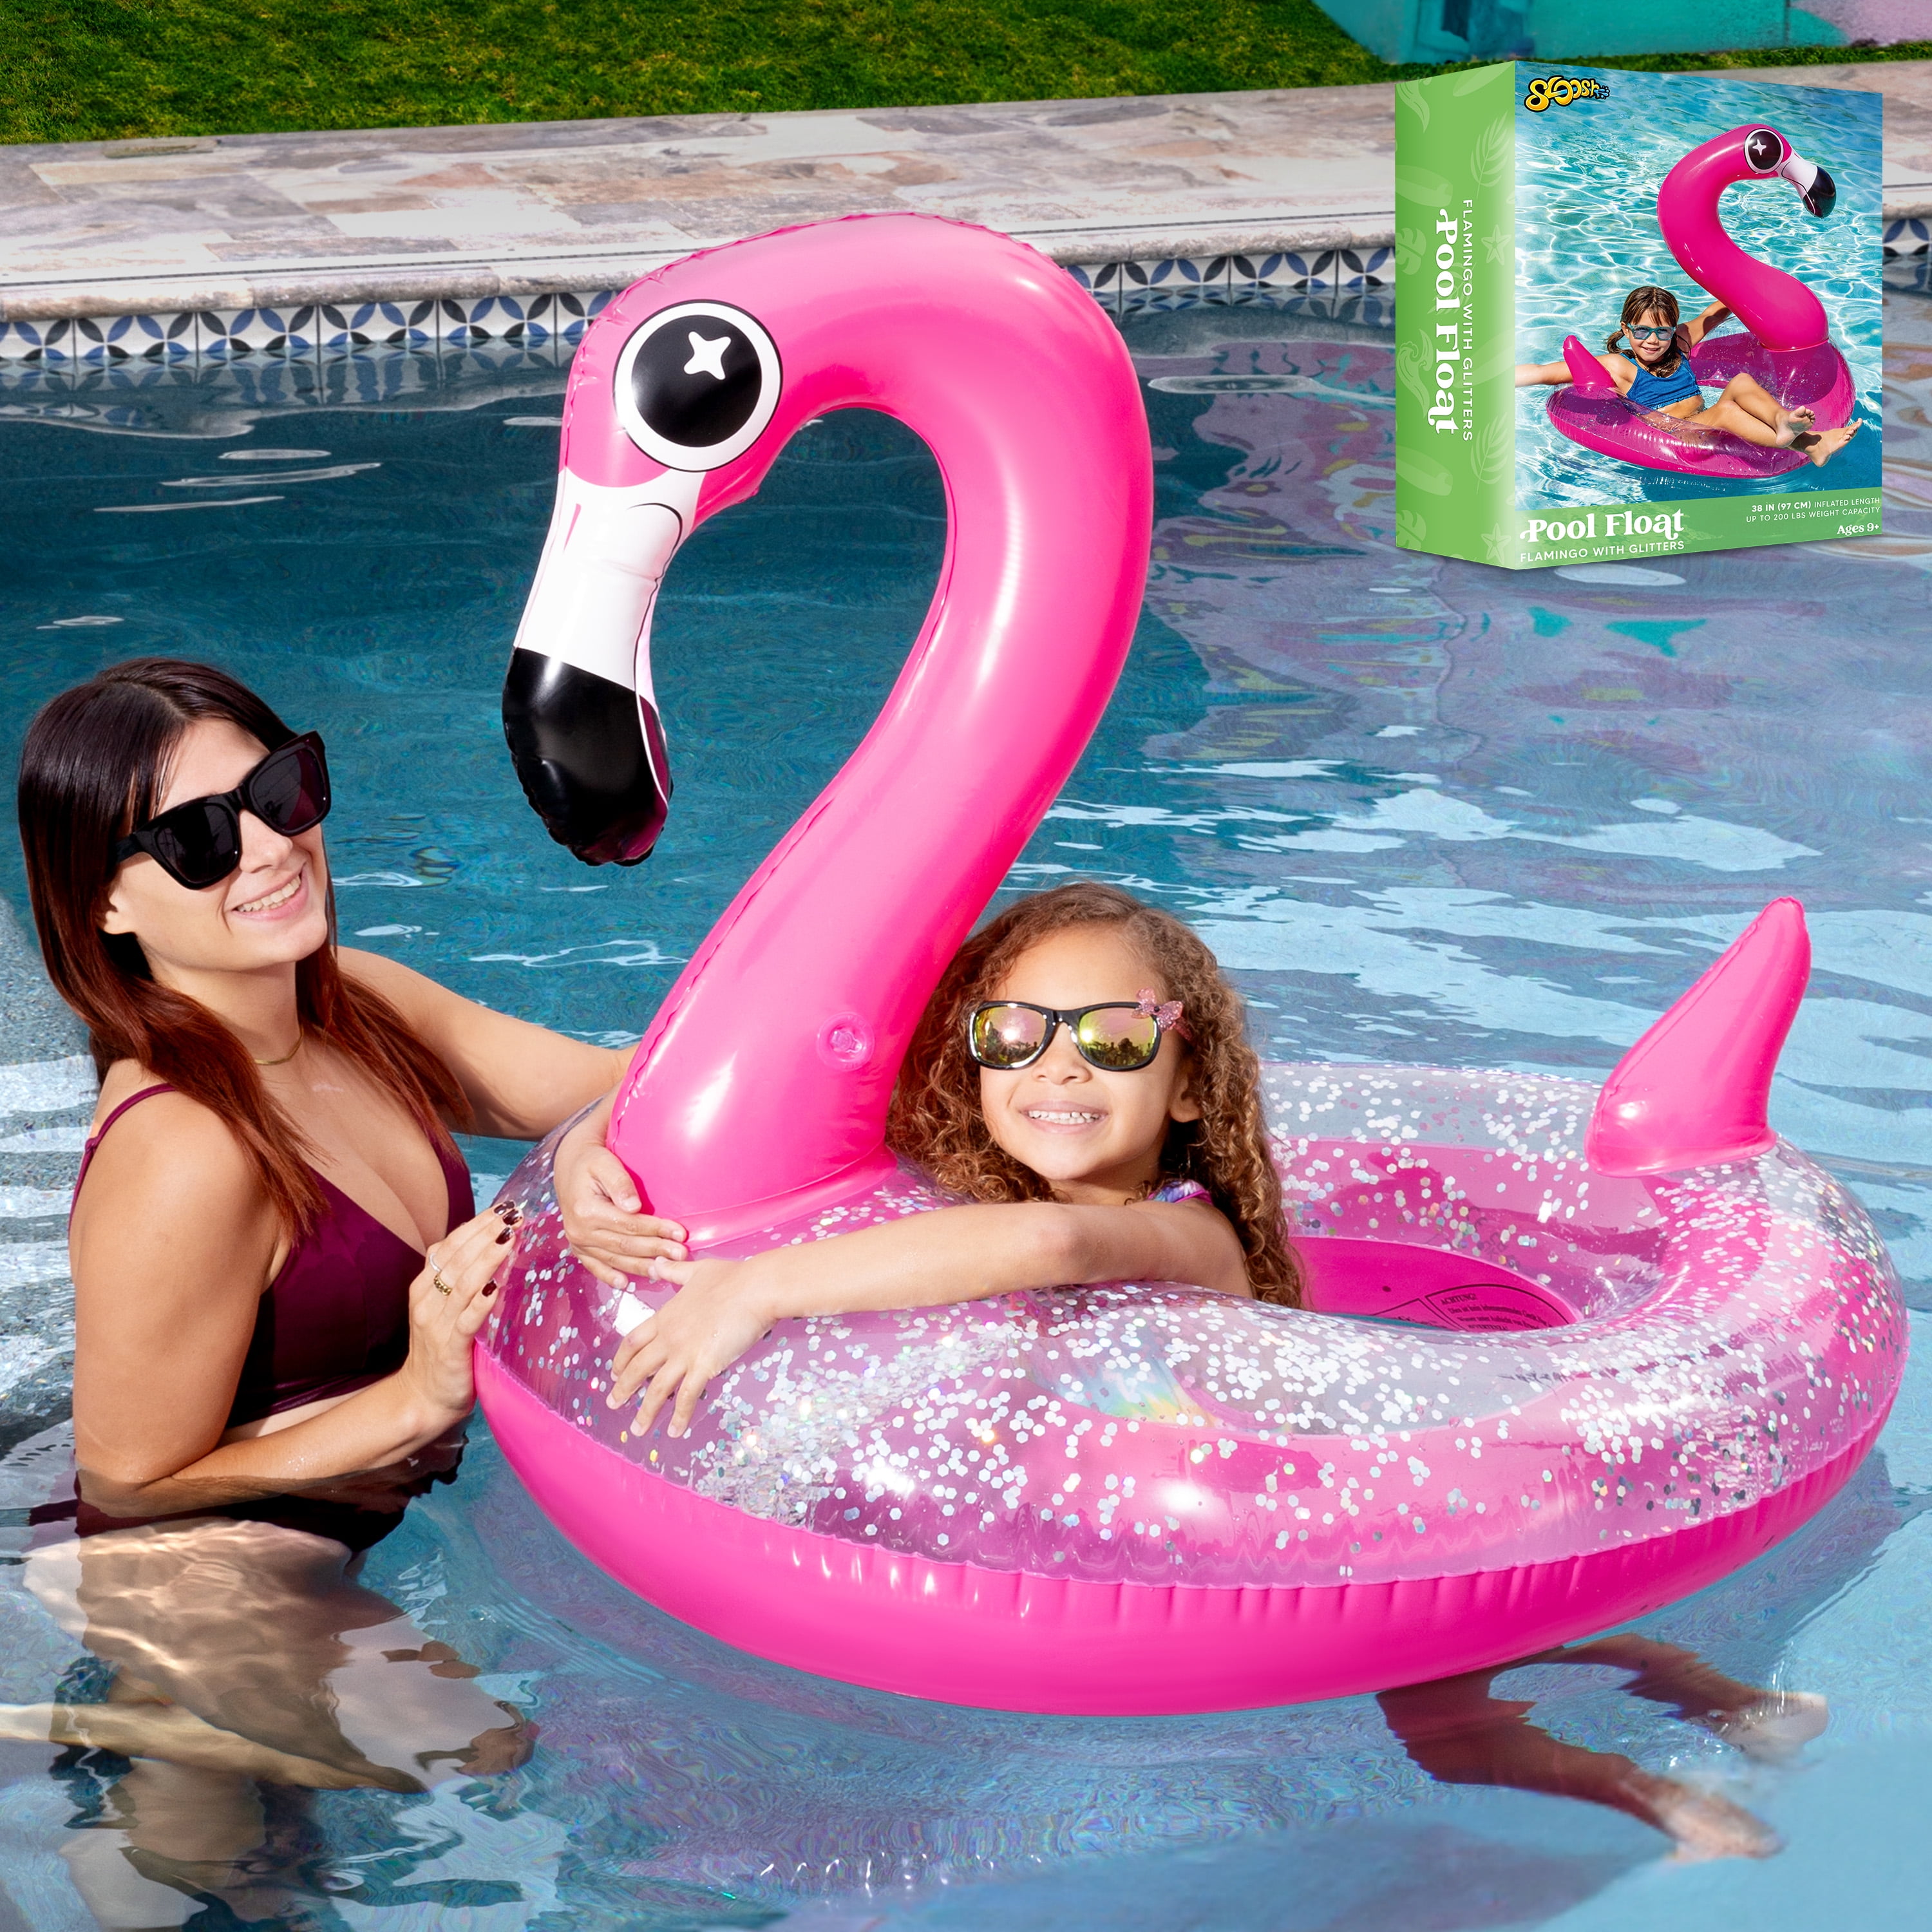 Syncfun Inflatable Flamingo Pool Floats